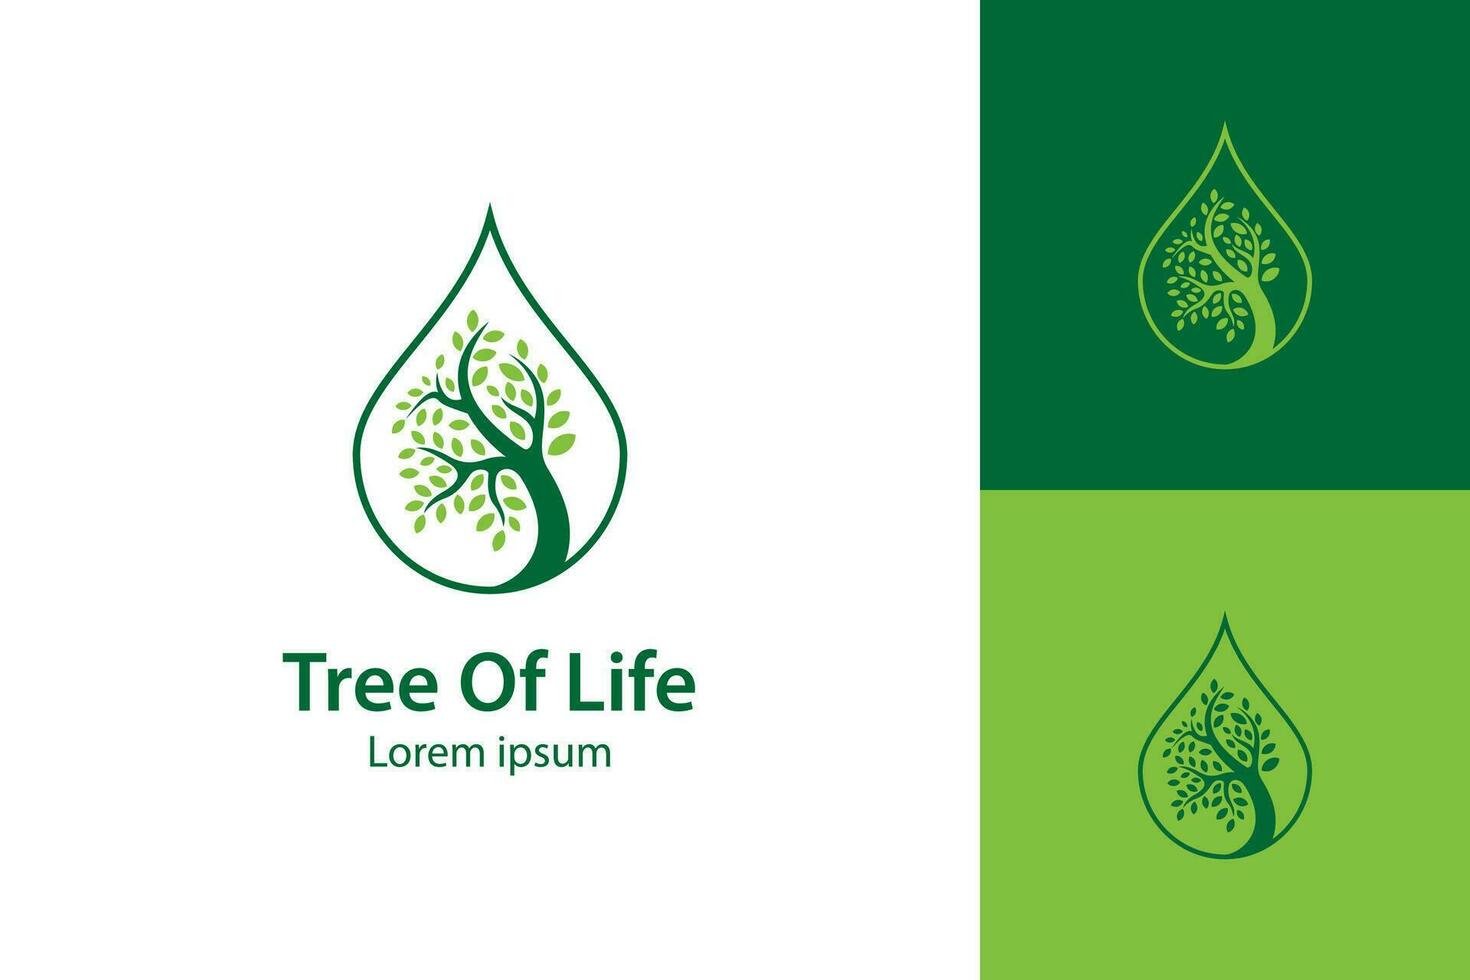 träd och droppar eller vatten kombinerad med träd liv logotyp design illustration för ekologi, miljö och lantbruk vektor ikon logotyp